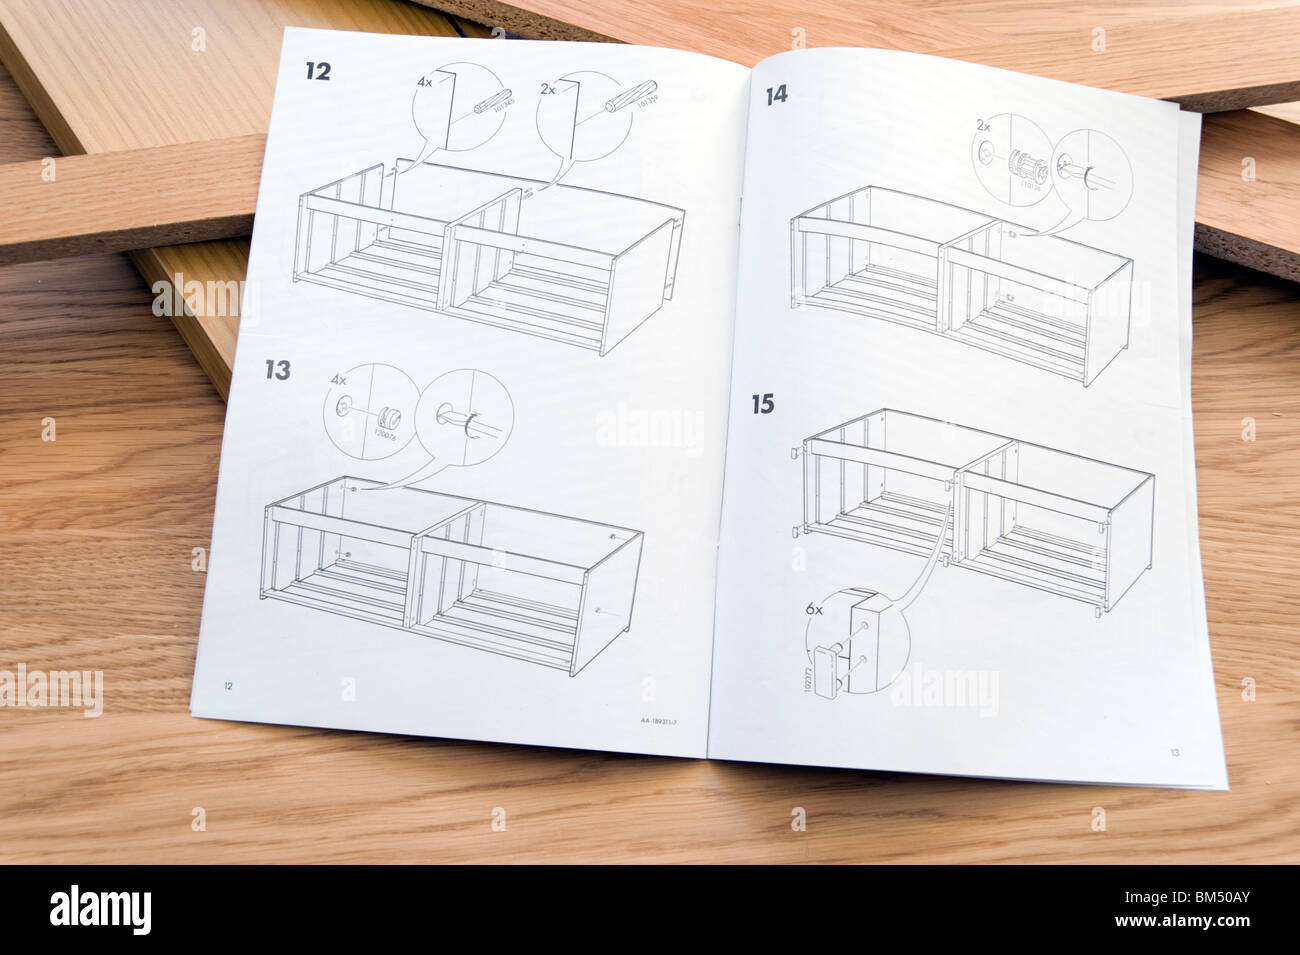 Auto le istruzioni di assemblaggio per Ikea flat pack mobili Foto Stock